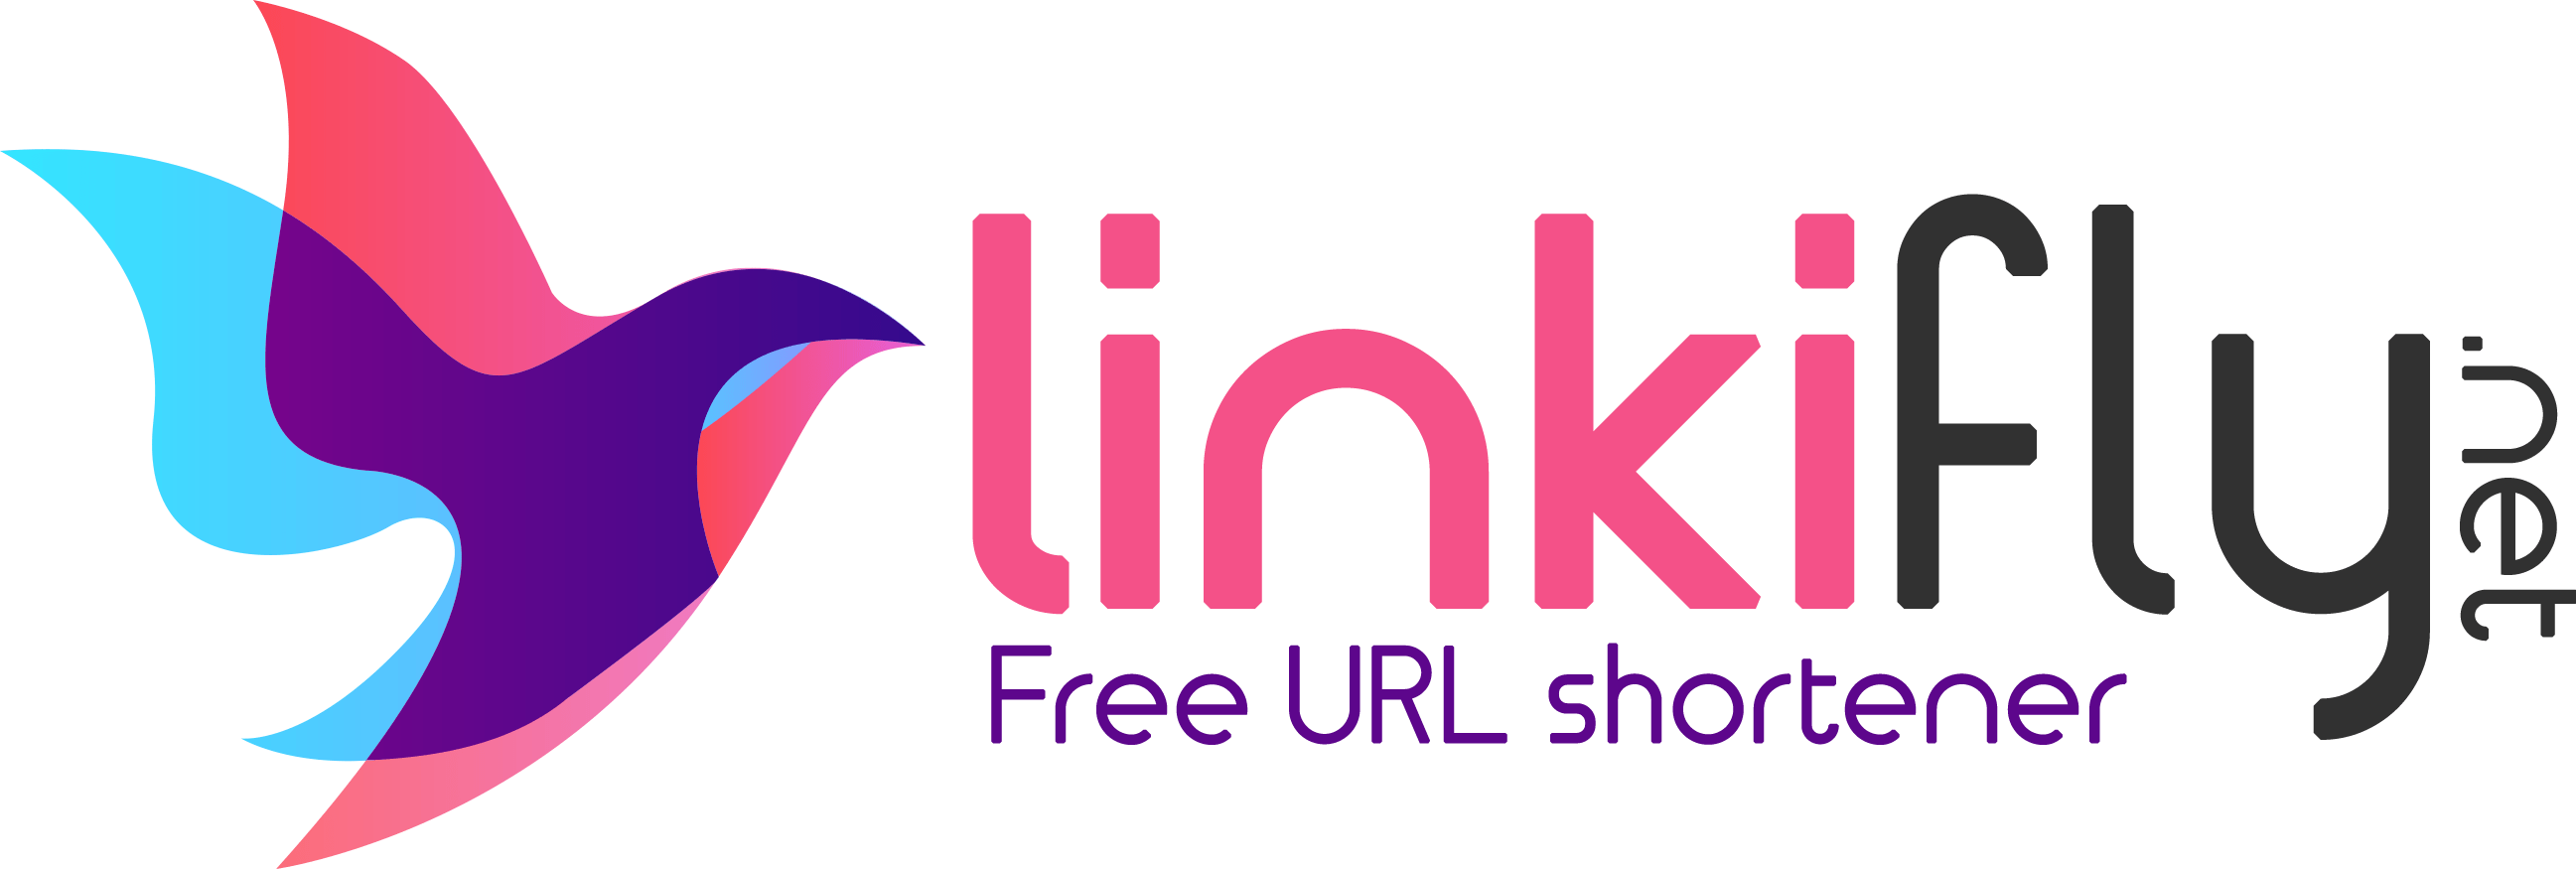 LinkiFly: URL Shortener - Short URLs Free & Branded Links